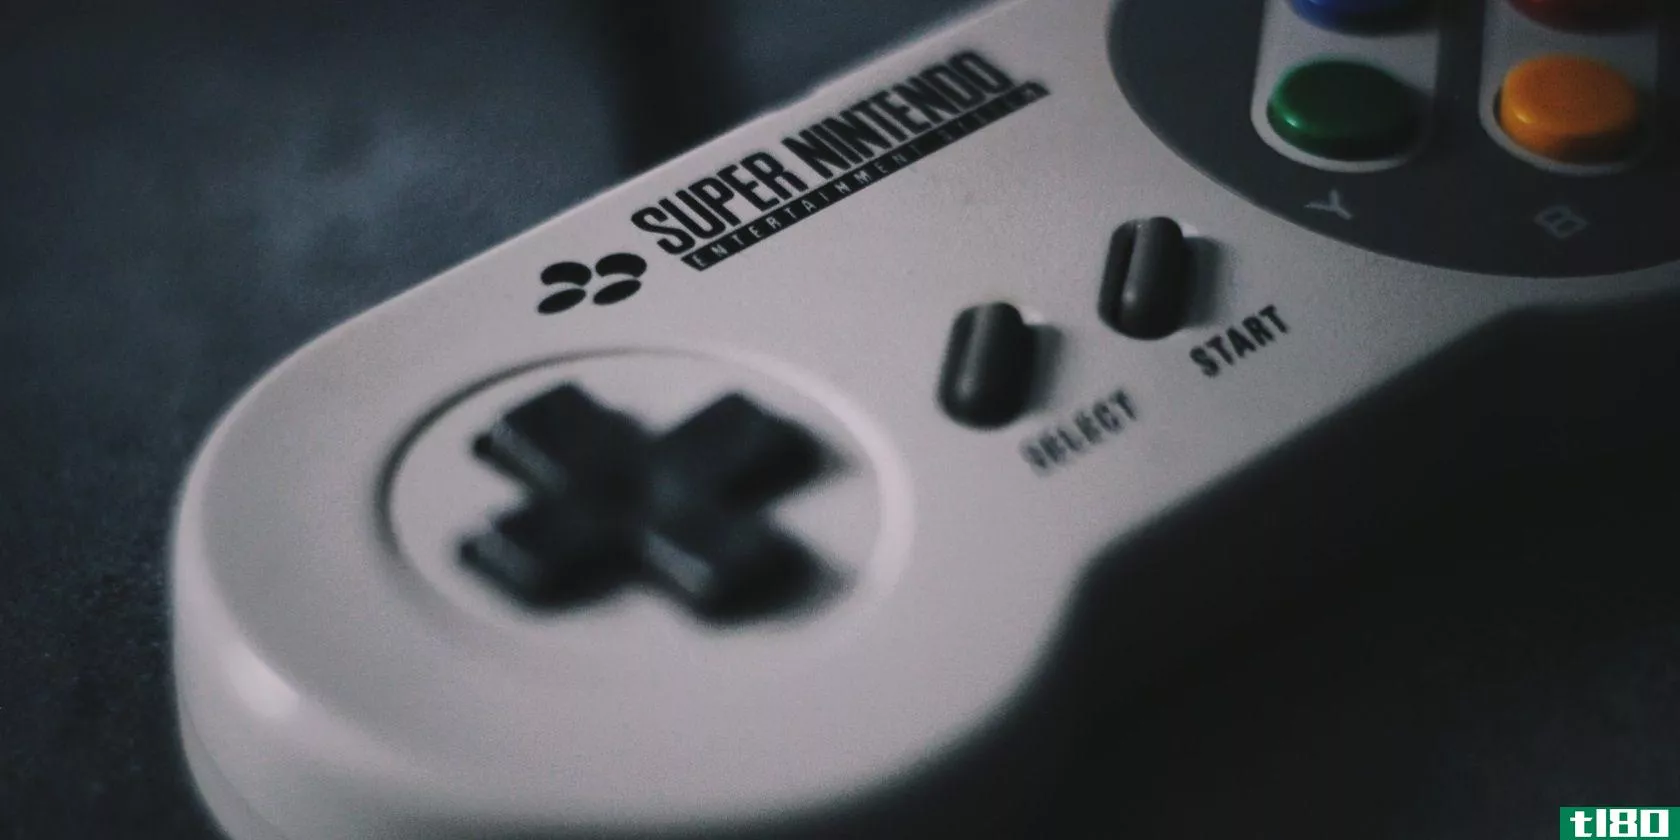 Super Nintendo game controller